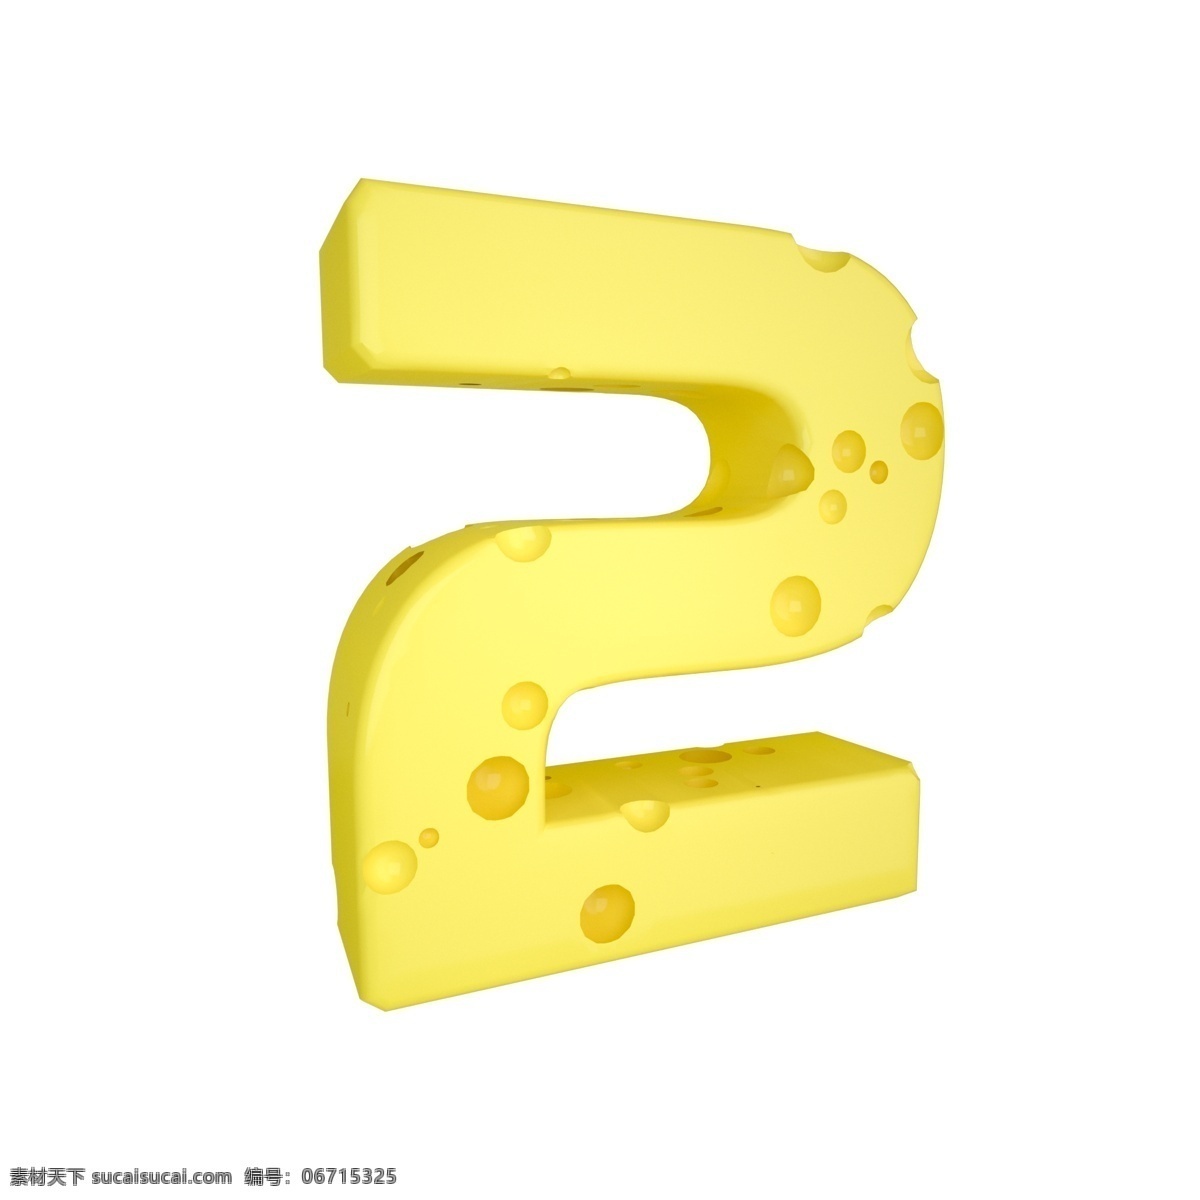 c4d 创意 奶酪 数字 装饰 3d 黄色 立体 食物 平面海报配图 电商淘宝装饰 可爱 柔和 数字2